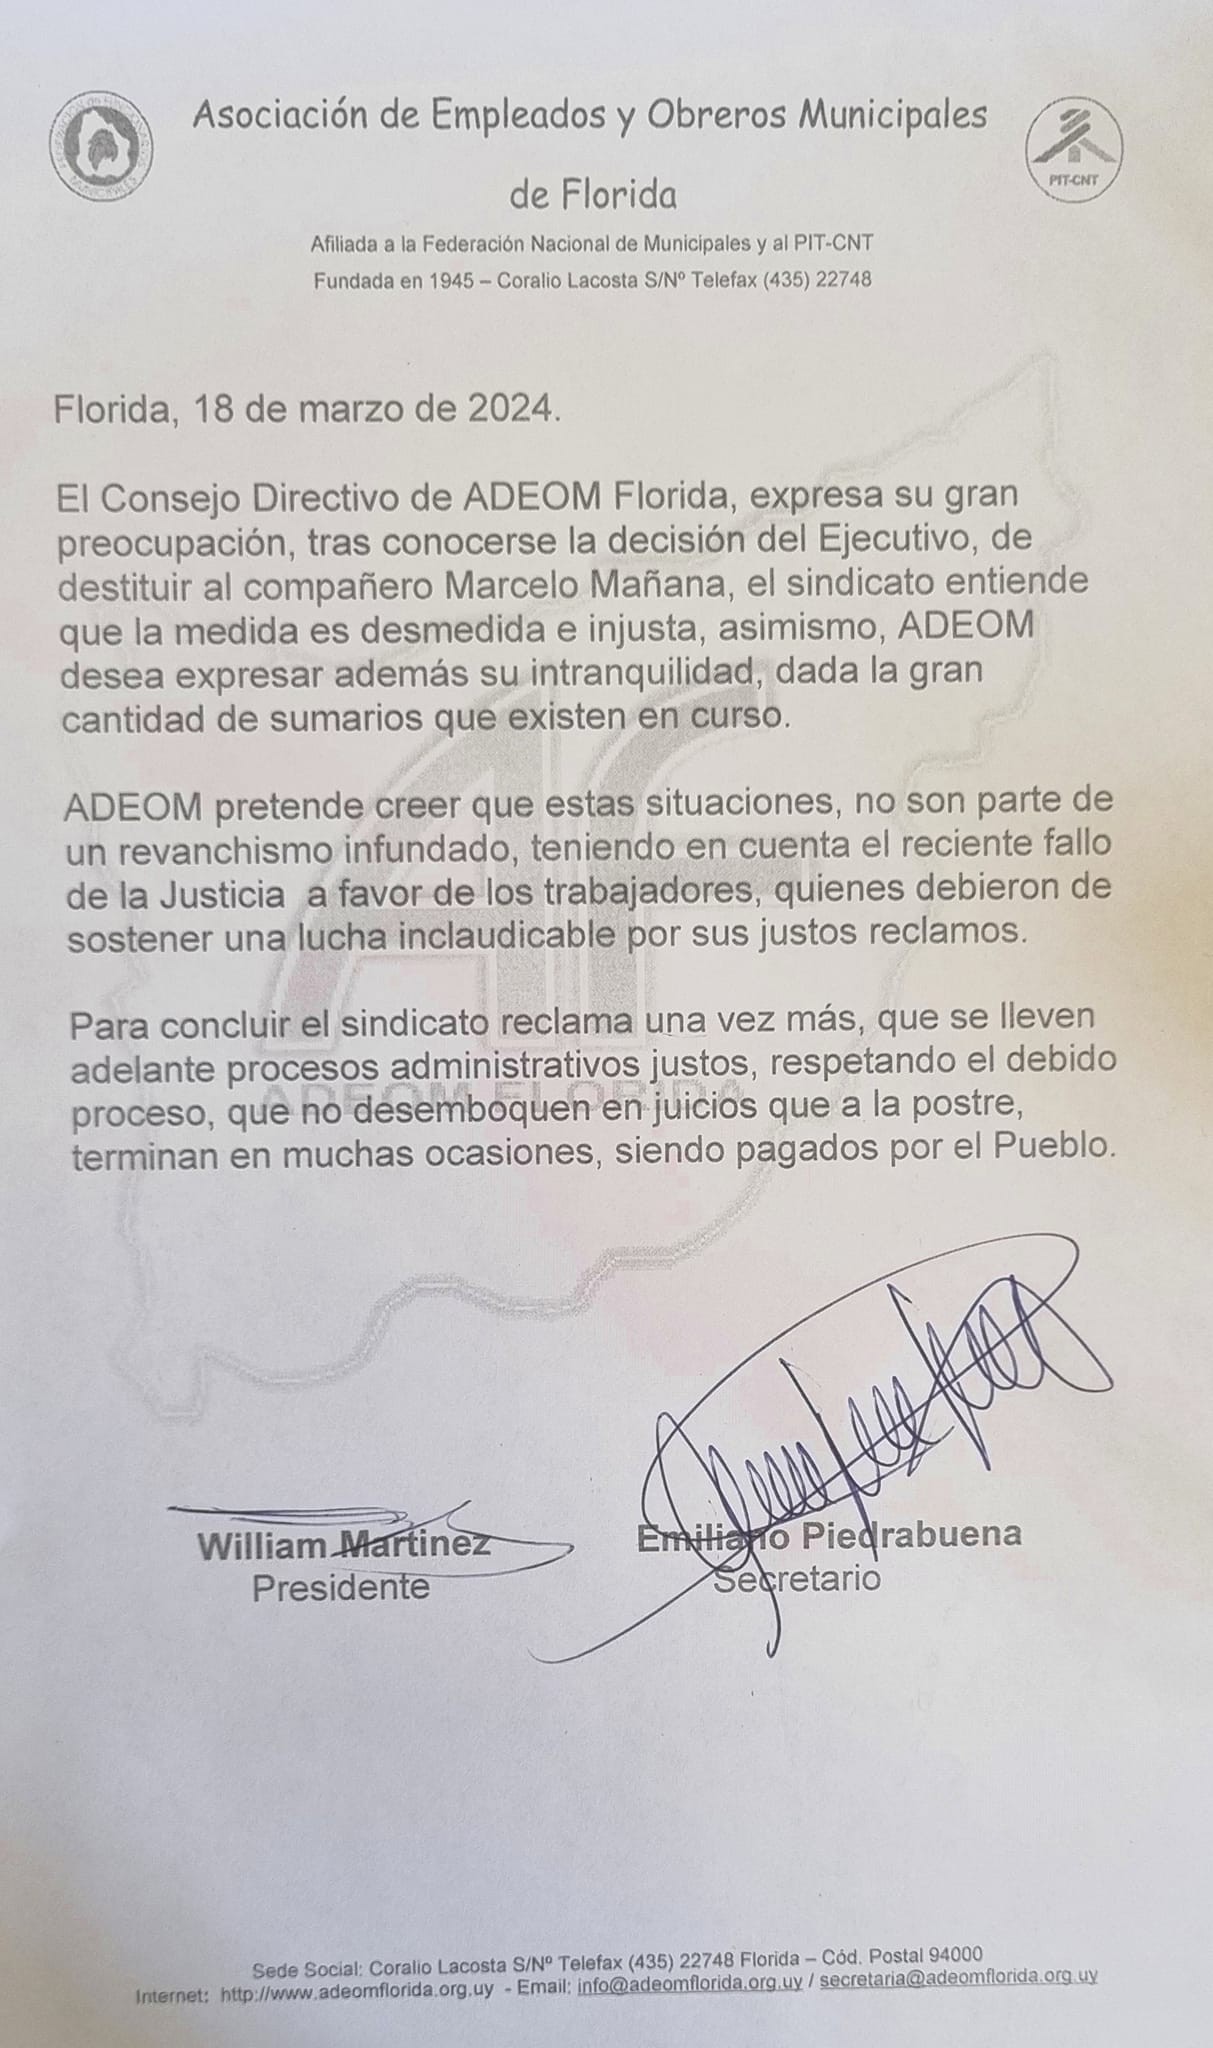 ADEOM Florida expresa preocupación por destitución de Marcelo Mañana